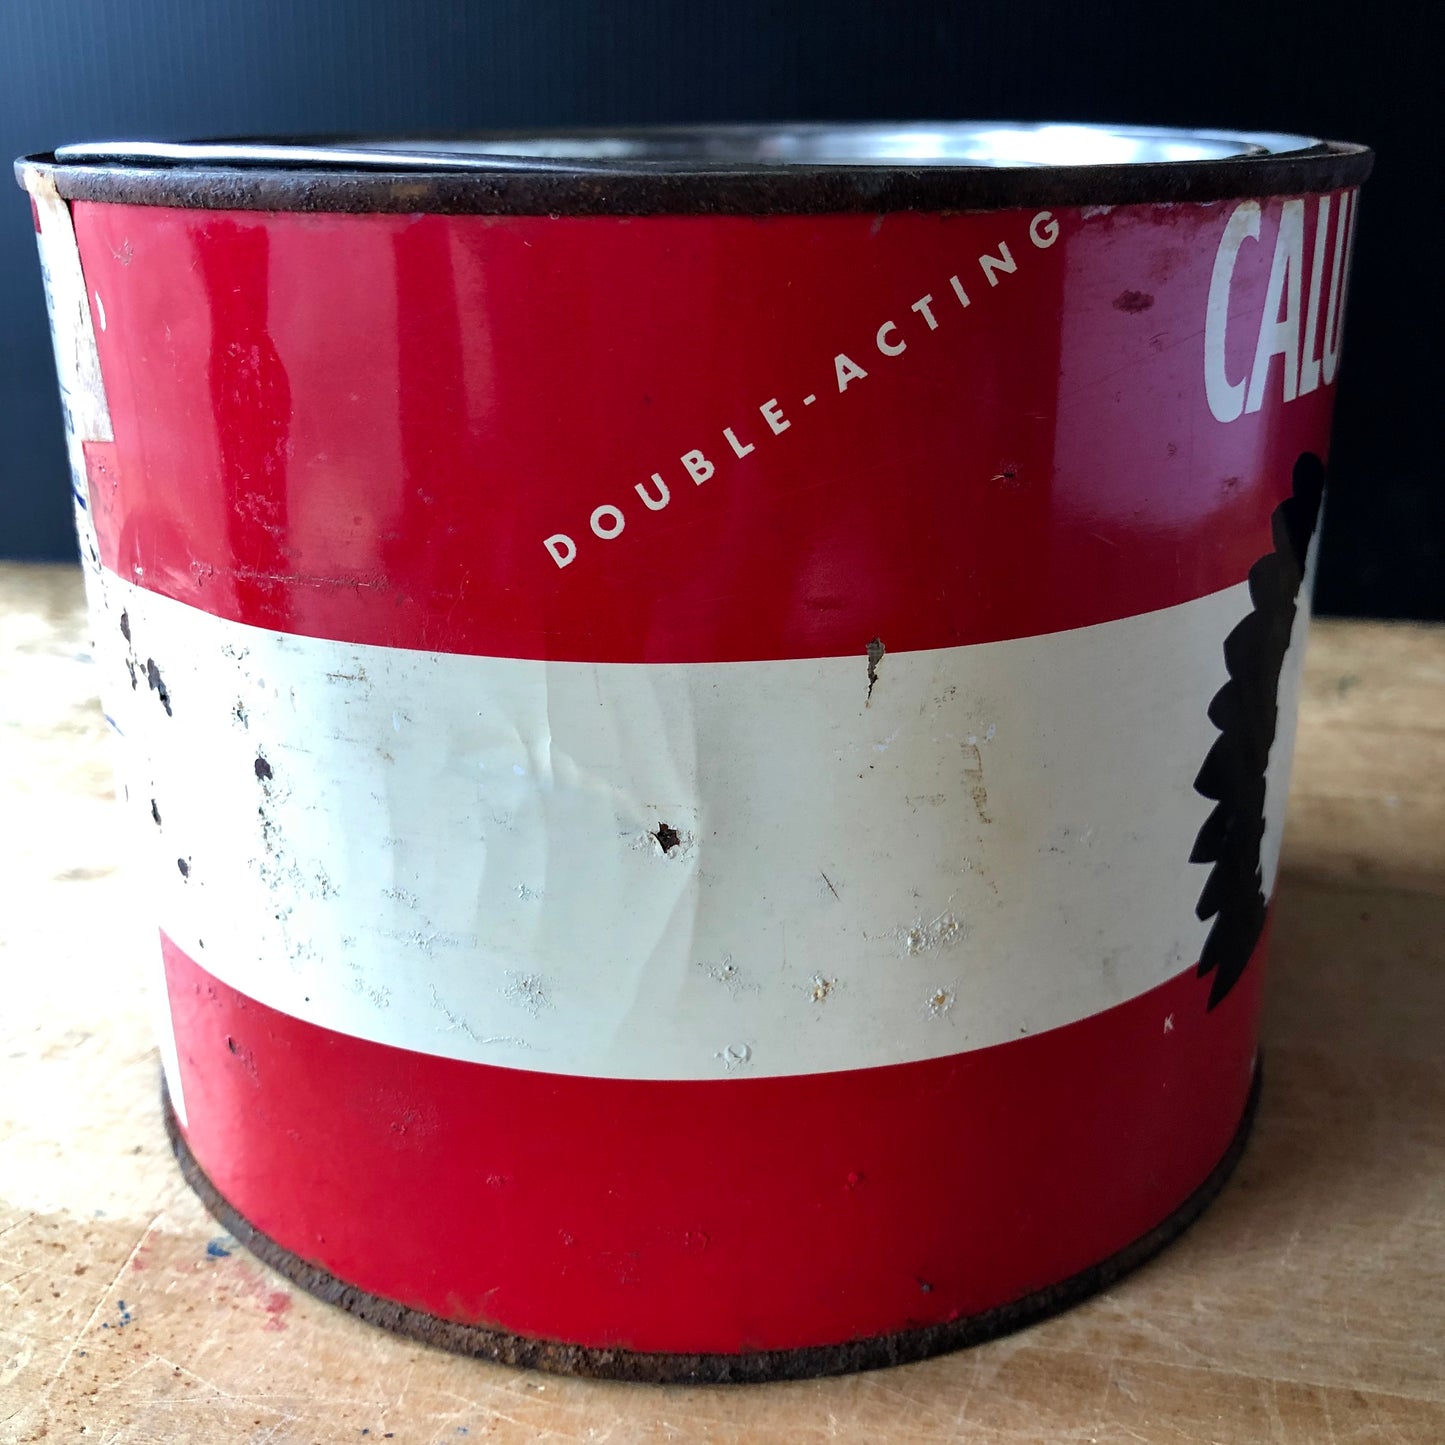 Calumet Baking Powder Vintage Advertising Tin